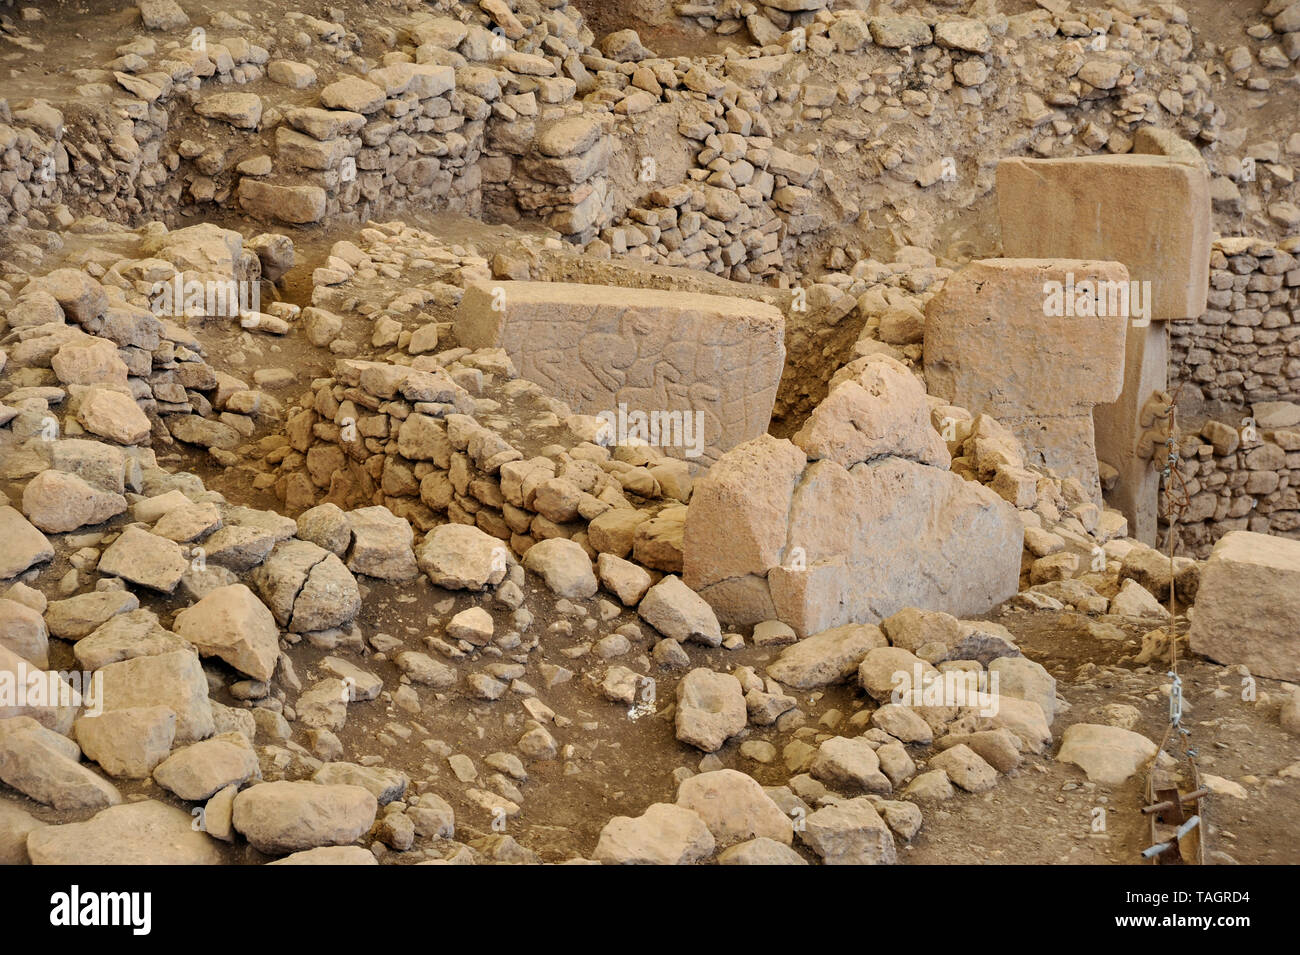 Les animaux sculptés dans la pierre sont visibles au site archéologique antique à Gobekli Tepe, Sanliurfa, Turquie Banque D'Images